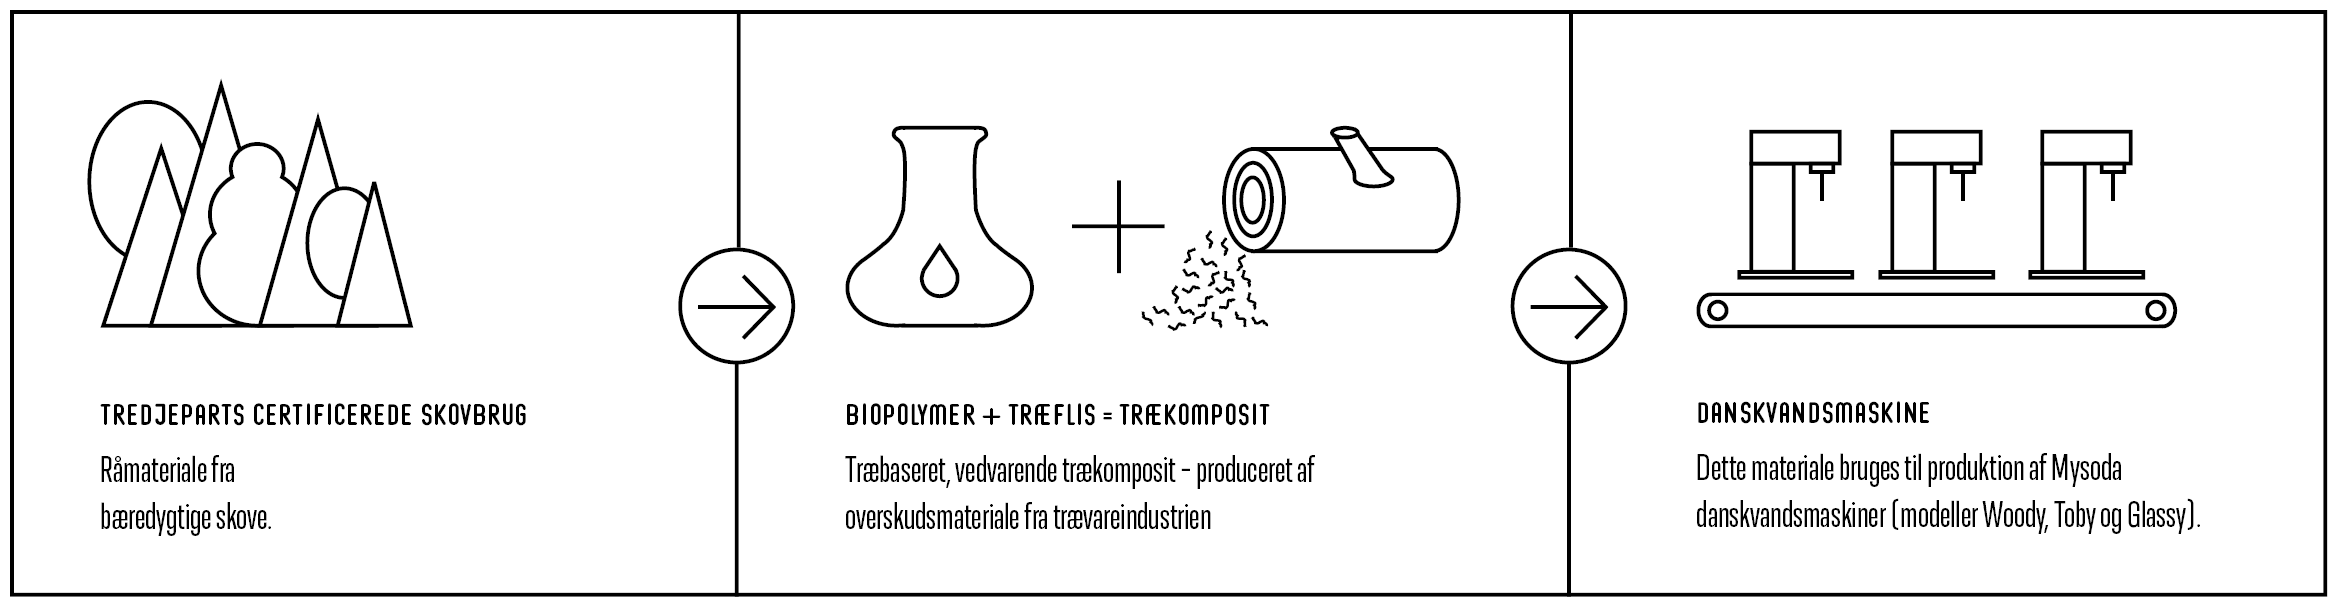 En illustration af produktionsprocessen fra træ til danskvandsmaskine